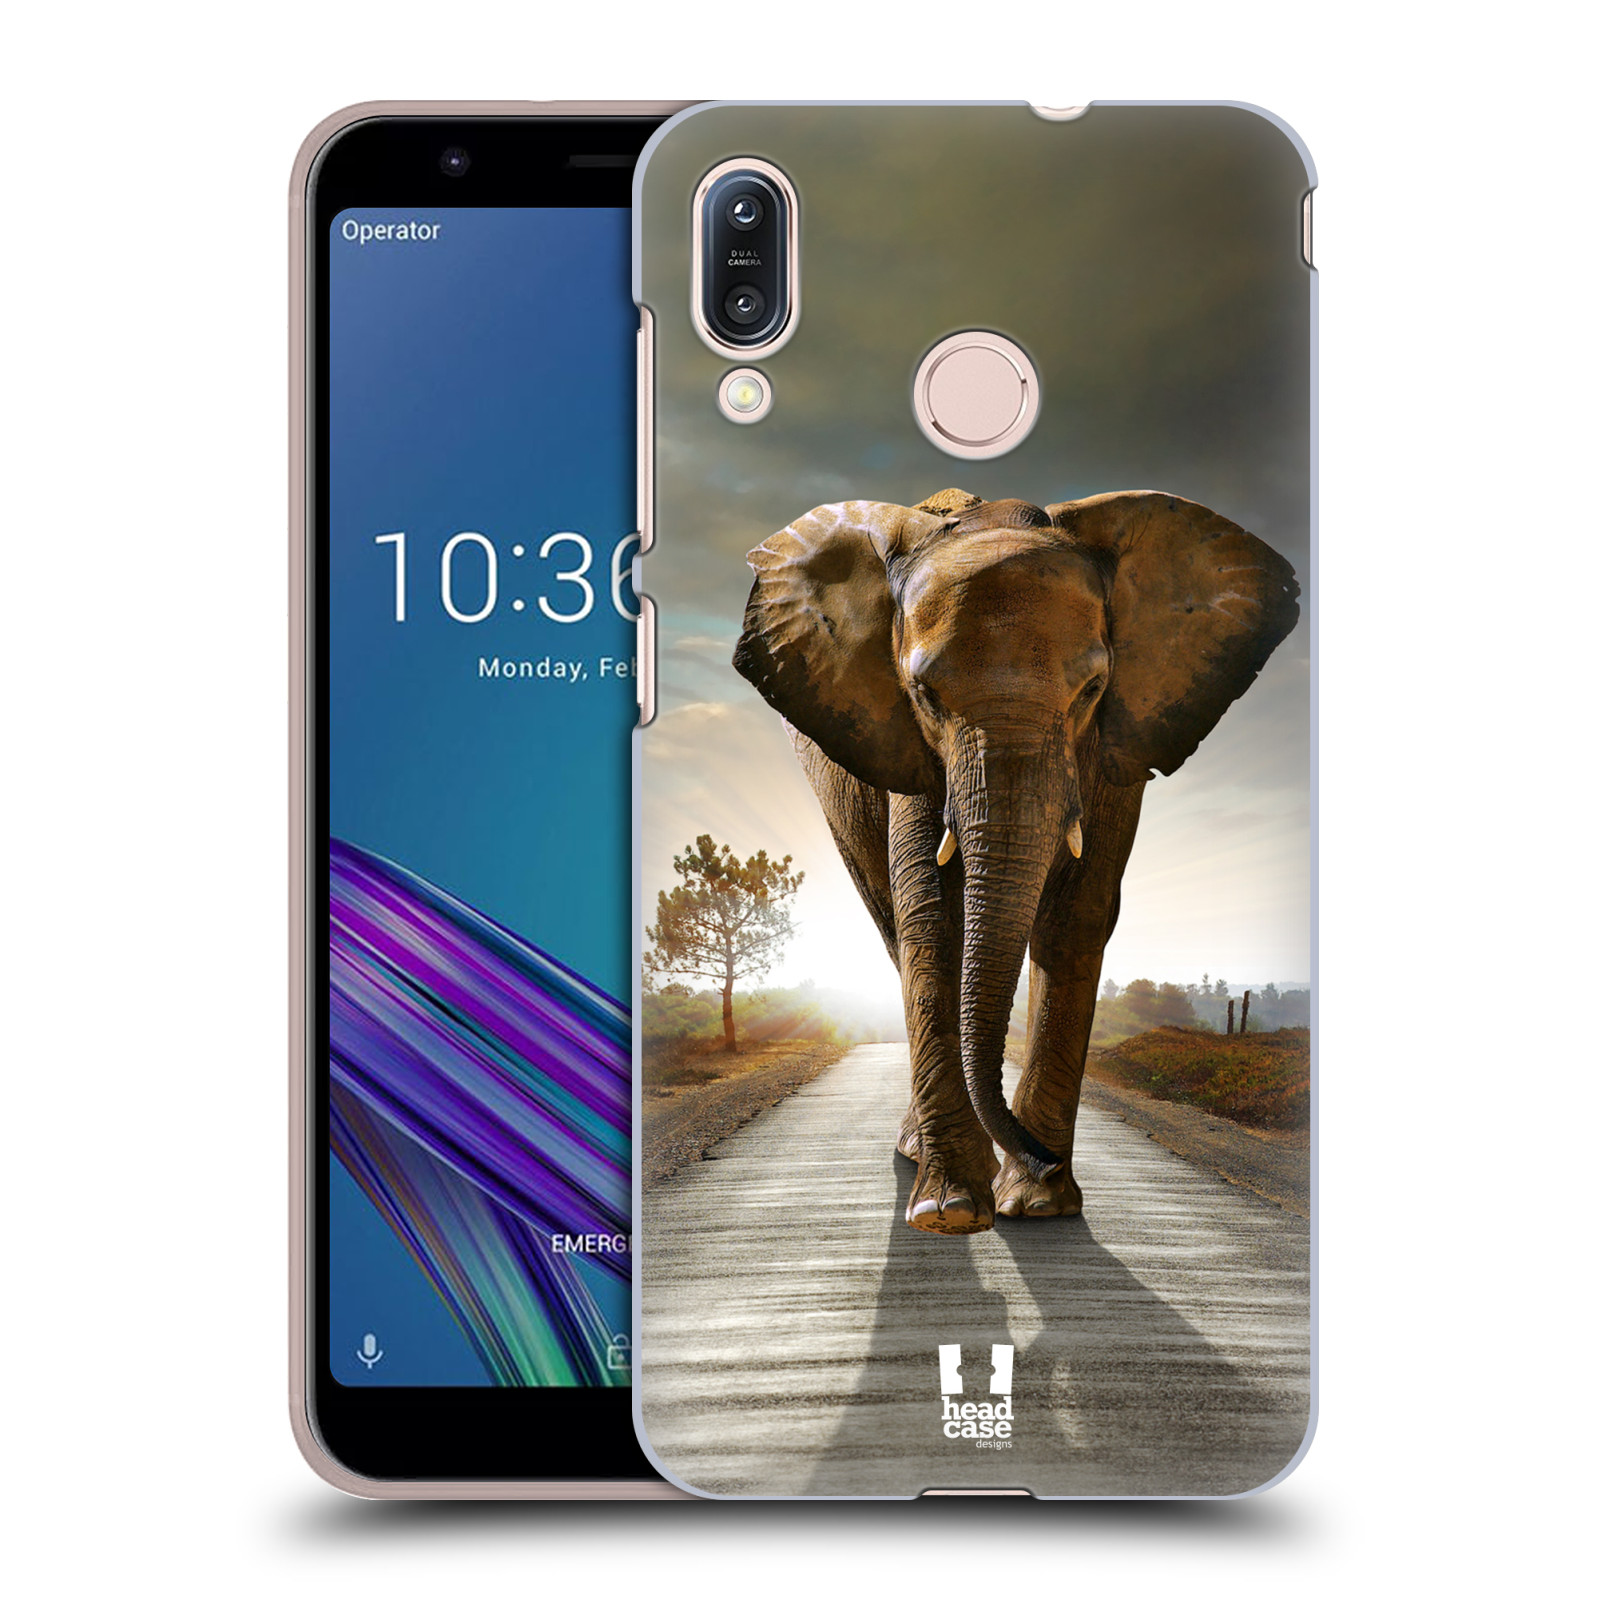 Zadní obal pro mobil Asus Zenfone Max (M1) ZB555KL - HEAD CASE - Svět zvířat kráčející slon